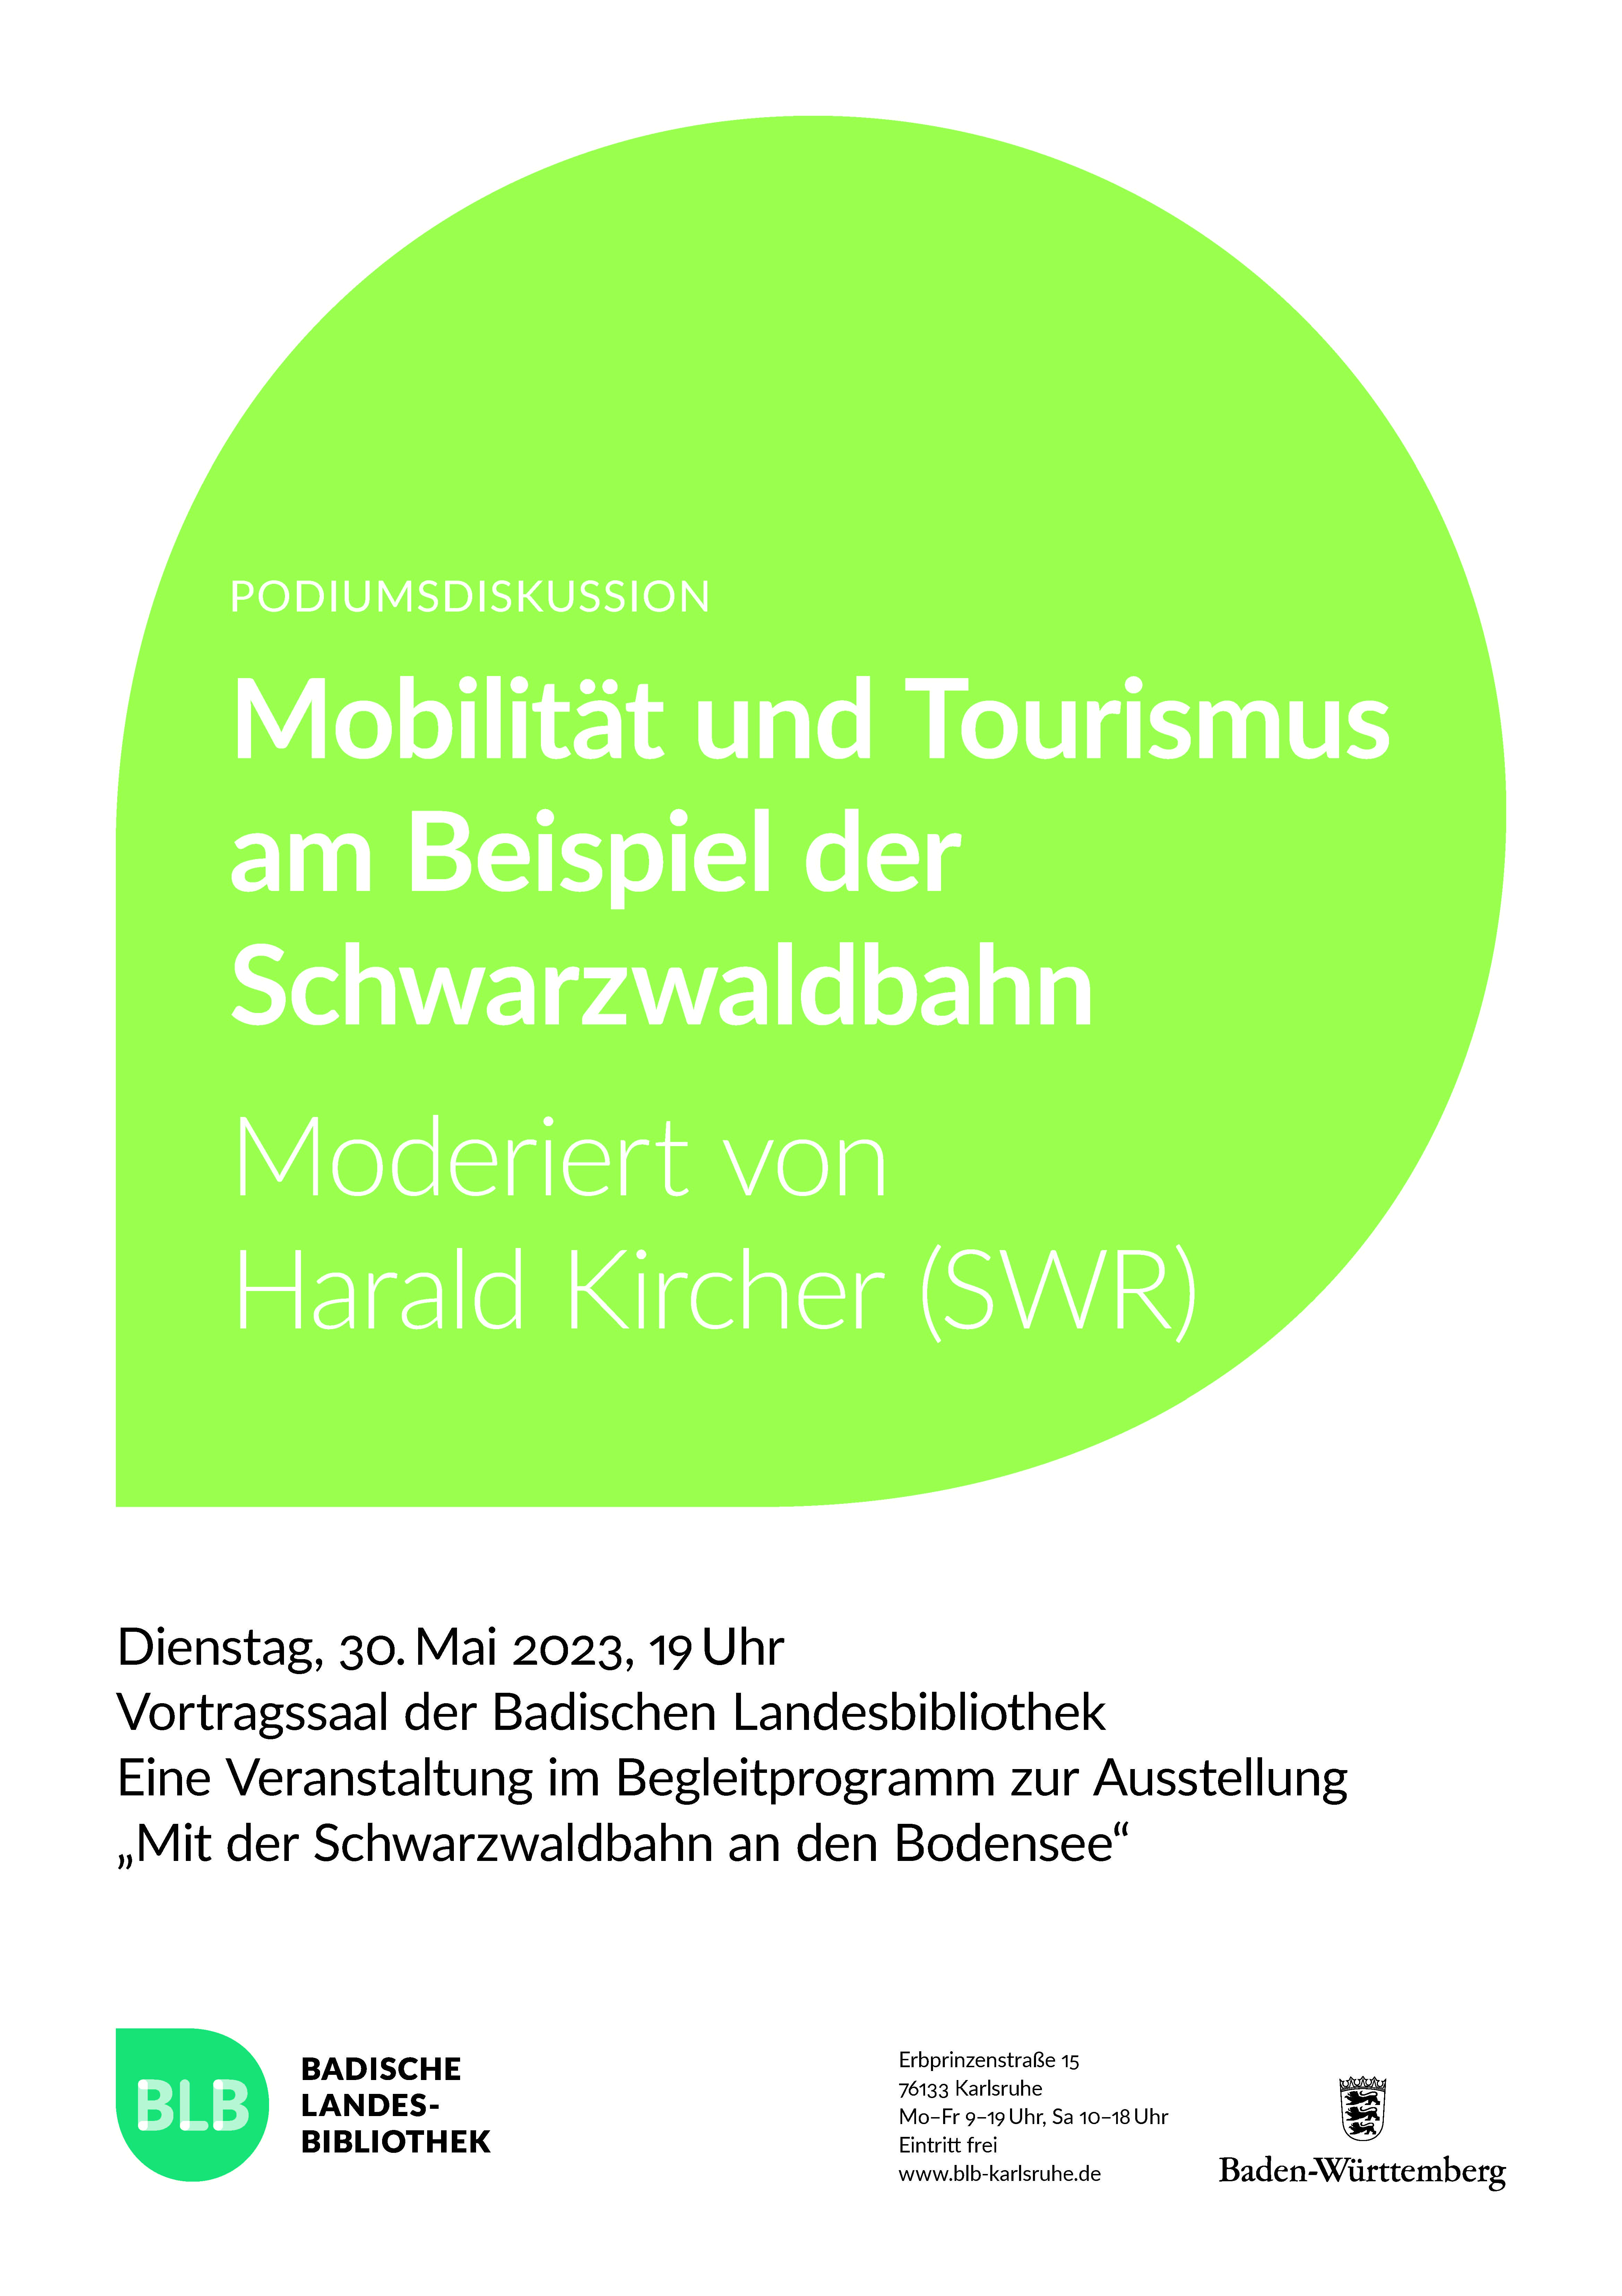 Zu sehen ist ein grünes Monogon mit der Aufschrift "Mobilität und Tourismus am Beispiel der Schwarzwaldbahn". Die Podiumsdiskussion wird moderiert von Harald Kircher (SWR) und findet am Dienstag, den 30. Mai 2023 um 19 Uhr statt. 